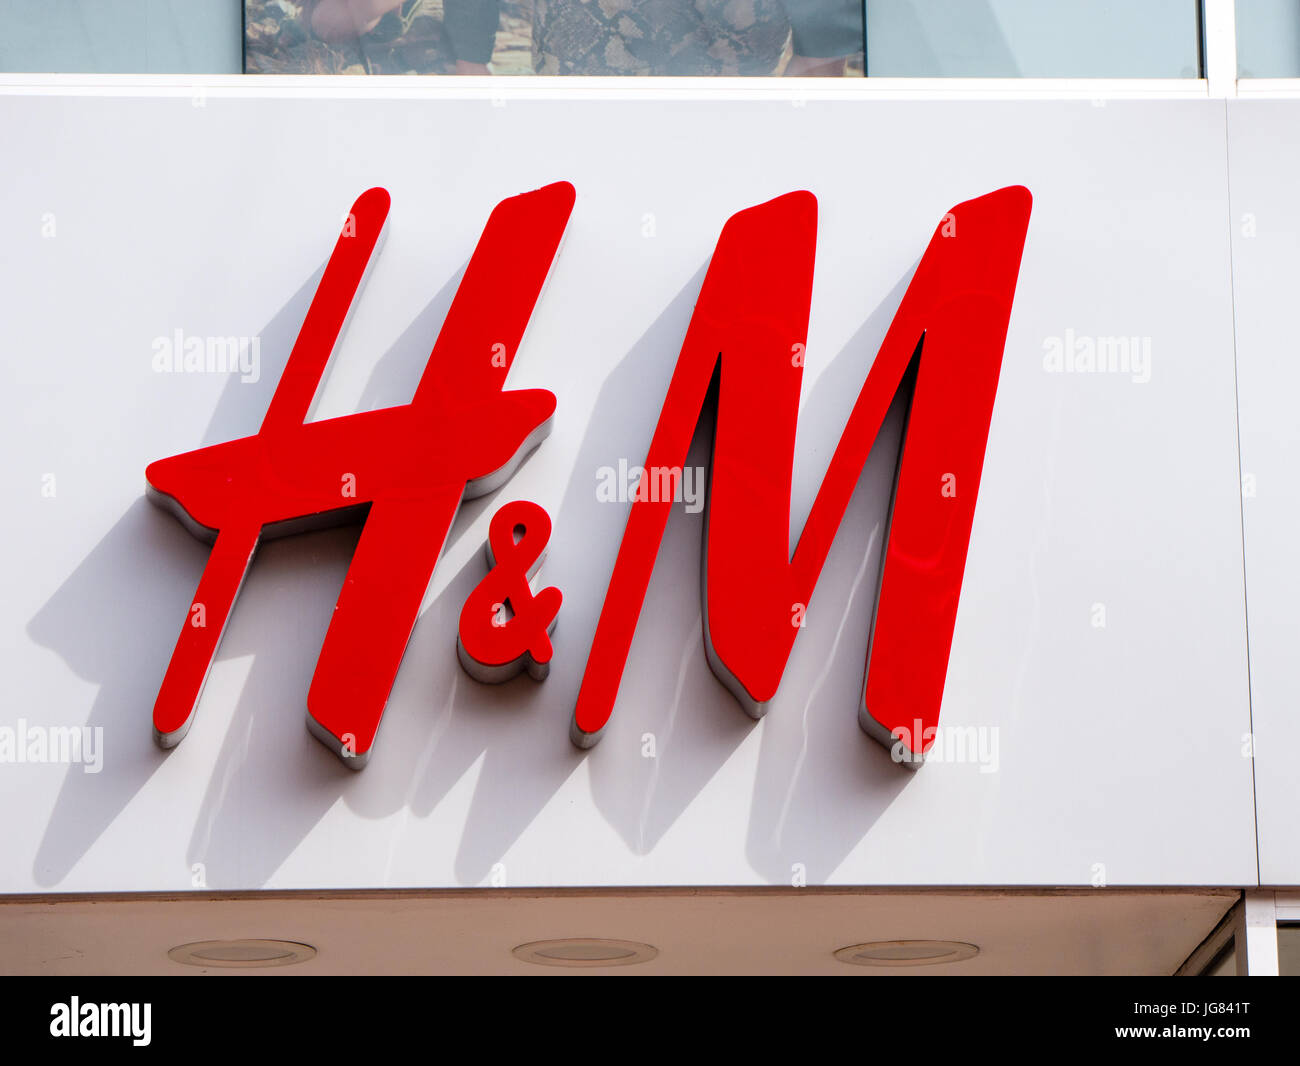 H&M, vanzari sub asteptari, in timp ce Zara merge mai bine